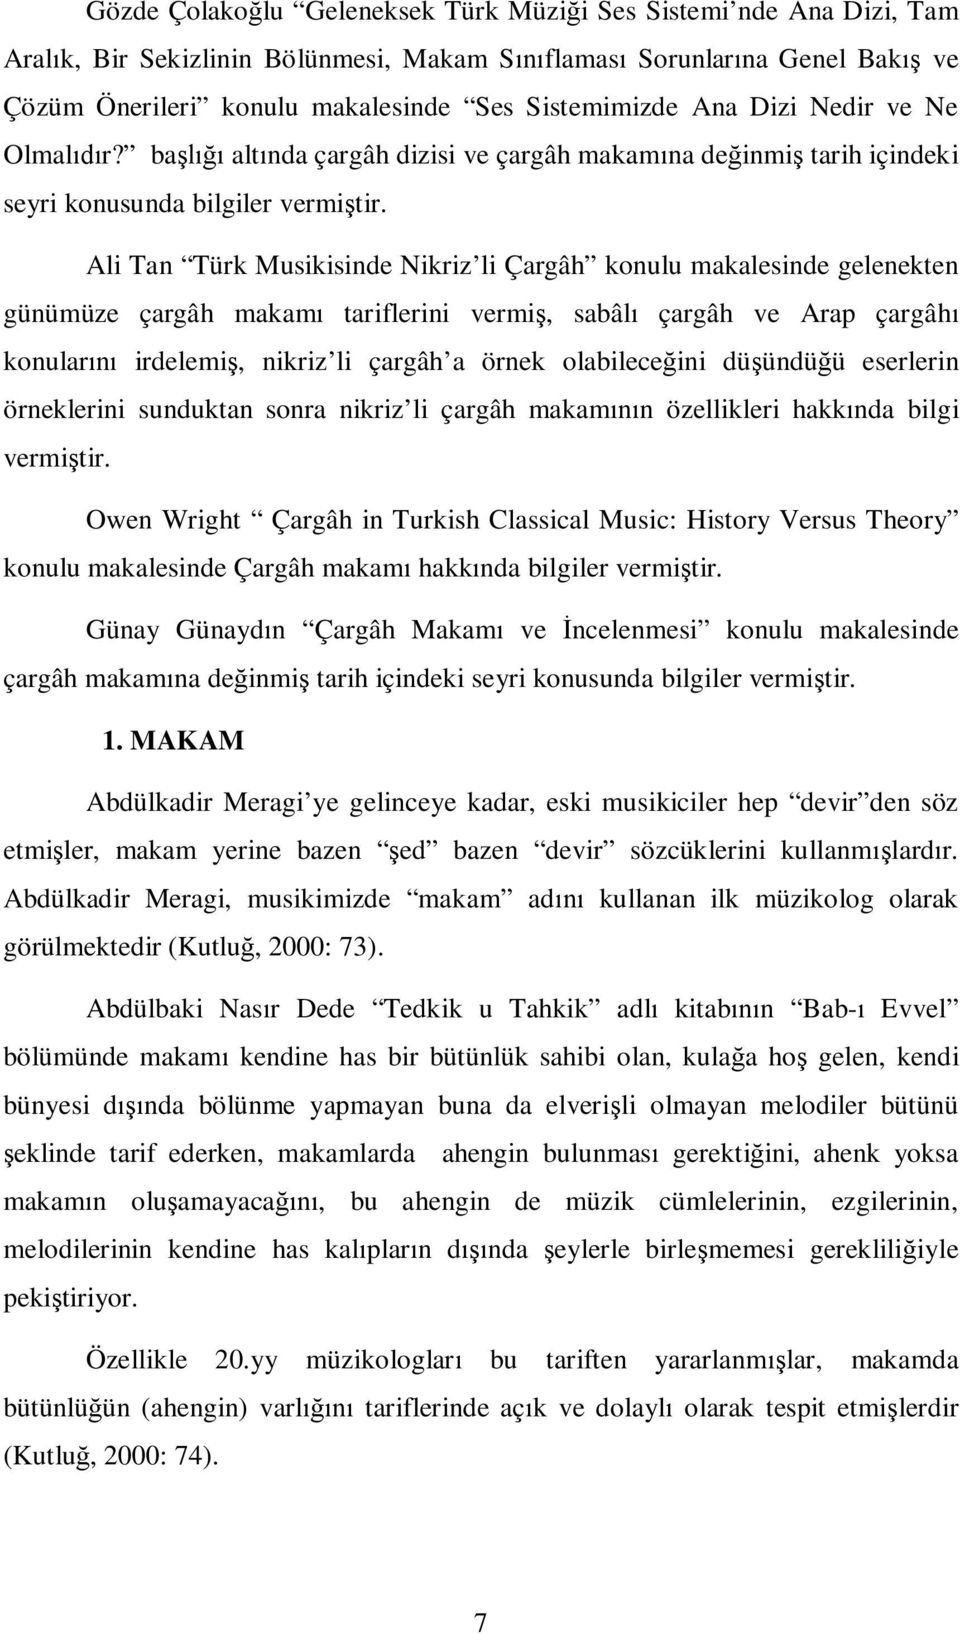 Ali Tan Türk Musikisinde Nikriz li Çargâh konulu makalesinde gelenekten günümüze çargâh makam tariflerini vermi, sabâl çargâh ve Arap çargâh konular irdelemi, nikriz li çargâh a örnek olabilece ini